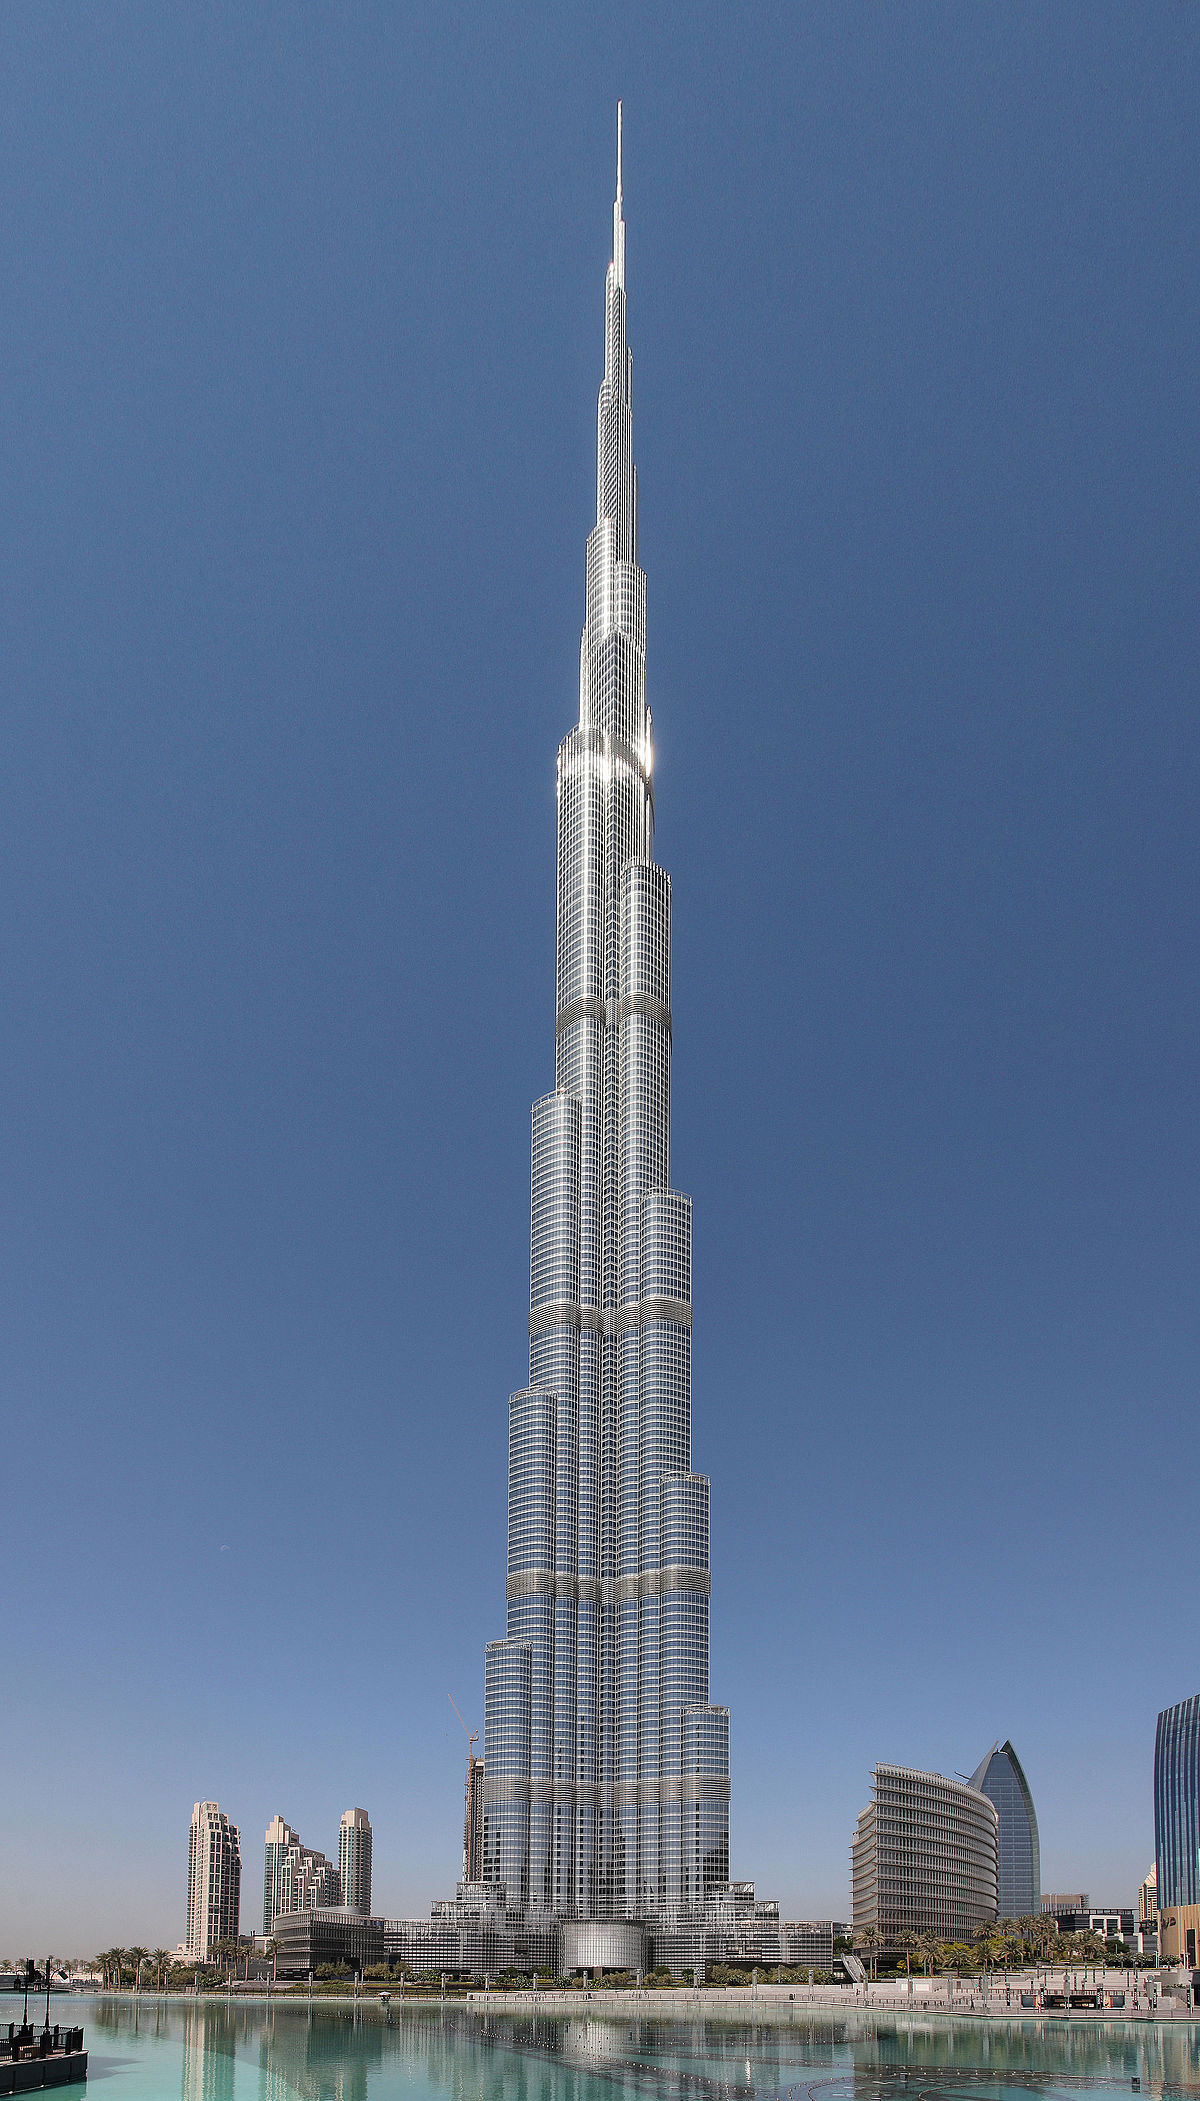 Nếu bạn đang muốn được đắm mình trong không gian ấn tượng của một tòa nhà cao nhất thế giới - Burj Khalifa, thì đây chính là điều bạn cần. Không chỉ là biểu tượng của Dubai, tòa nhà này còn mang đến cho du khách những trải nghiệm khó quên với những cảnh đẹp tuyệt vời từ trên cao. Cùng xem hình ảnh để cảm nhận sự vĩ đại của Burj Khalifa.